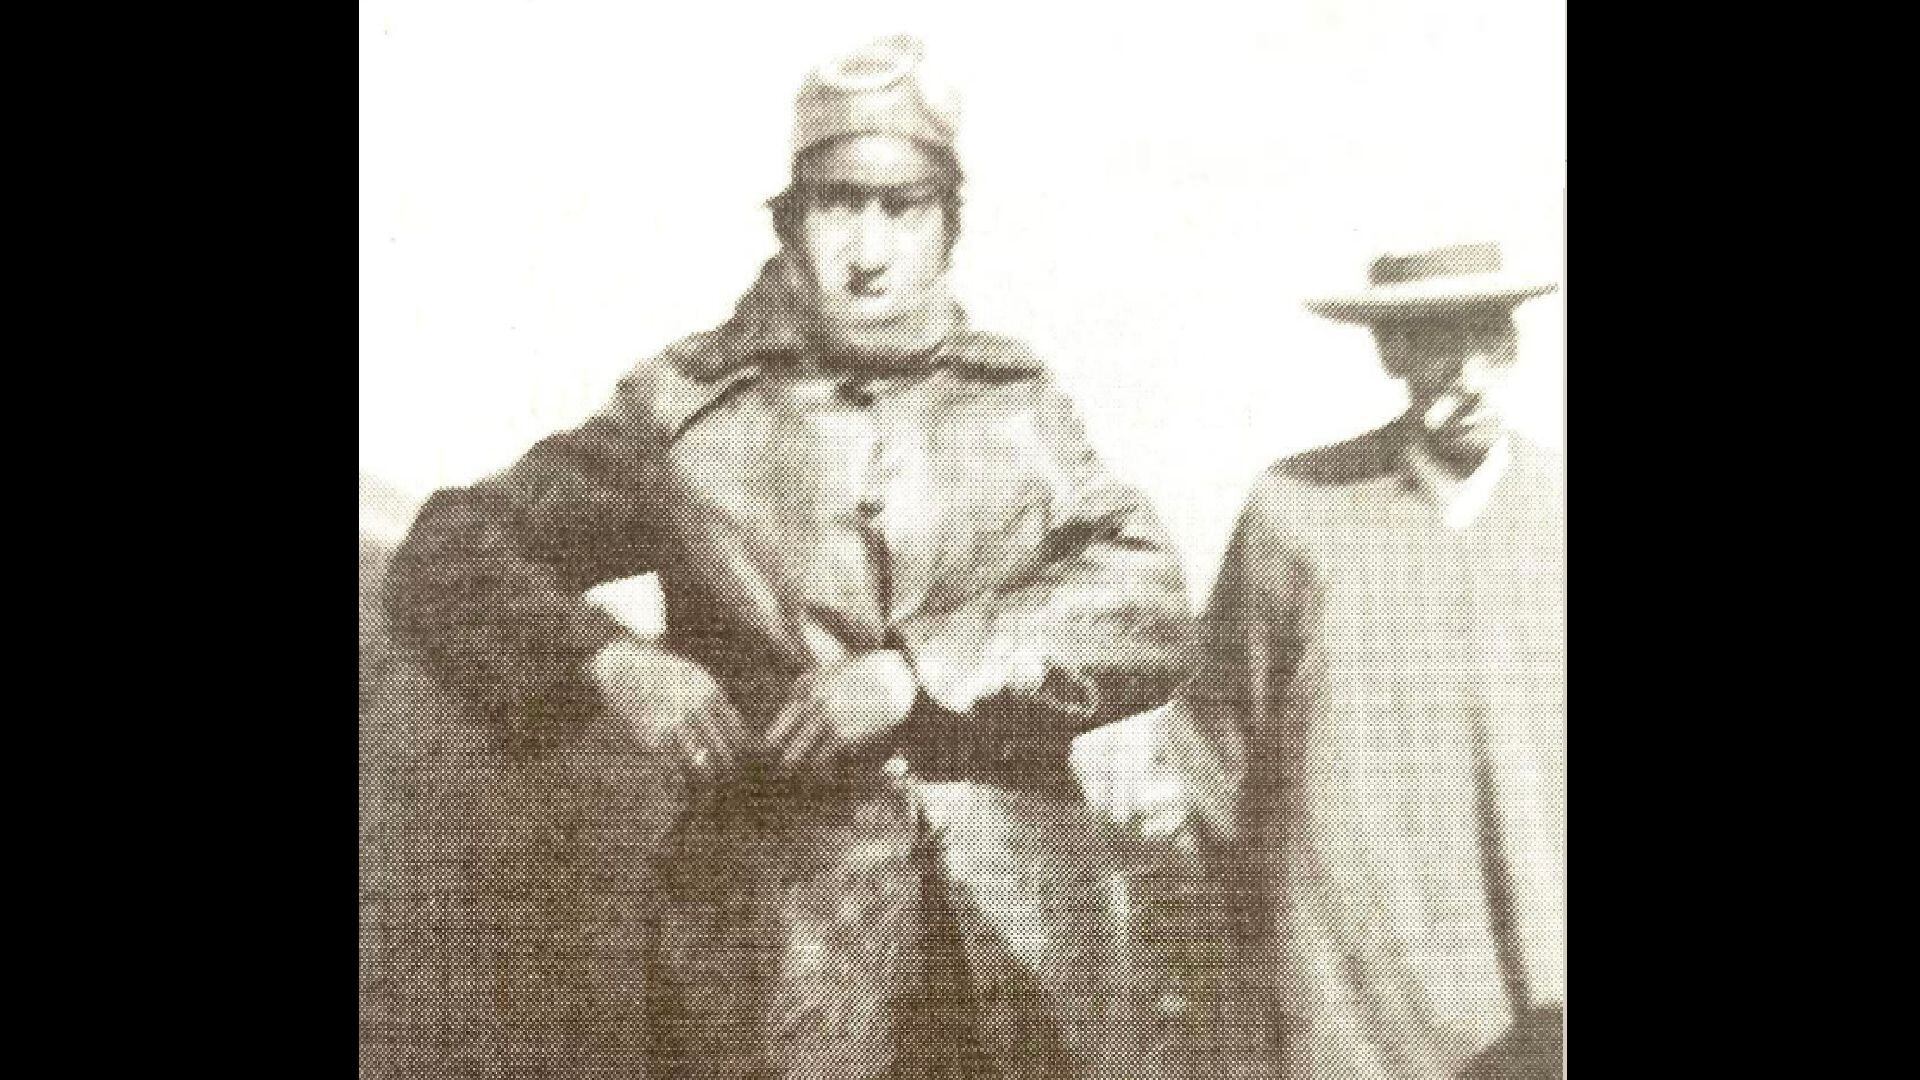 La hazaña de Alejandro Velasco Astete al cruzar los Andes en 1925 marcó un hito en la aviación mundial y dejó huellas profundas en Perú. Aquí llegando al Cusco. (Museo Aeronáutico del Perú)